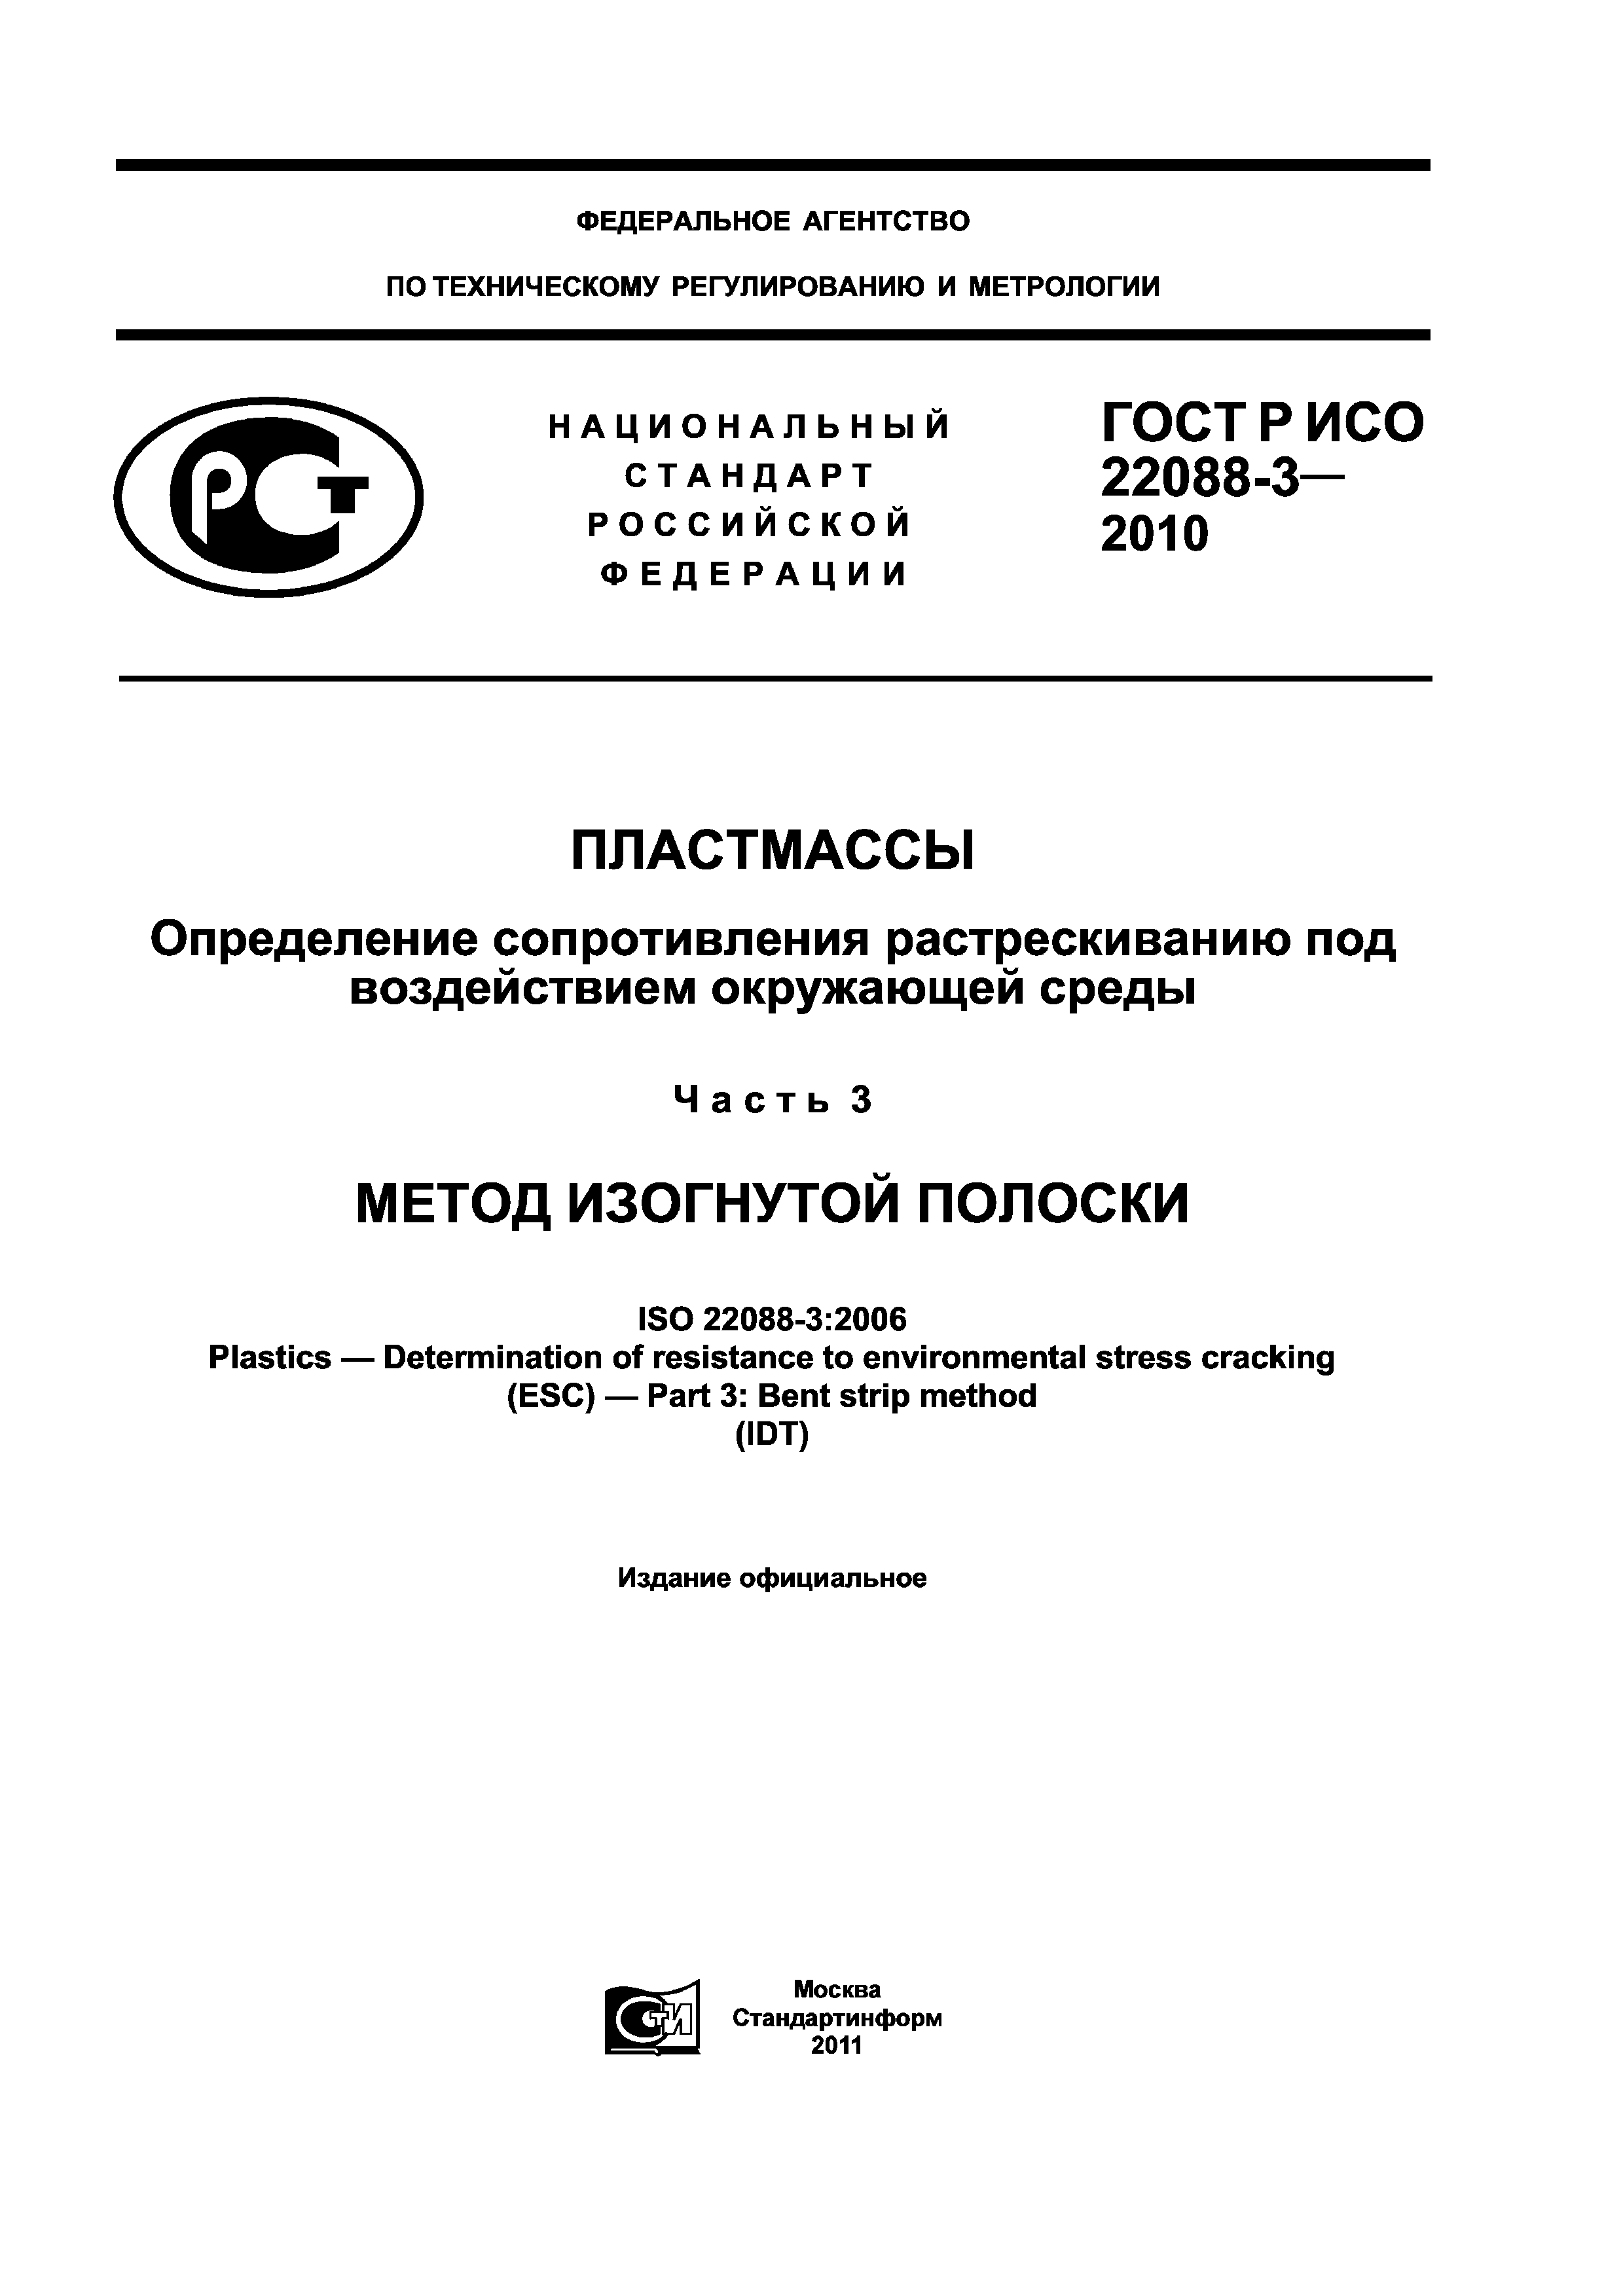 ГОСТ Р ИСО 22088-3-2010